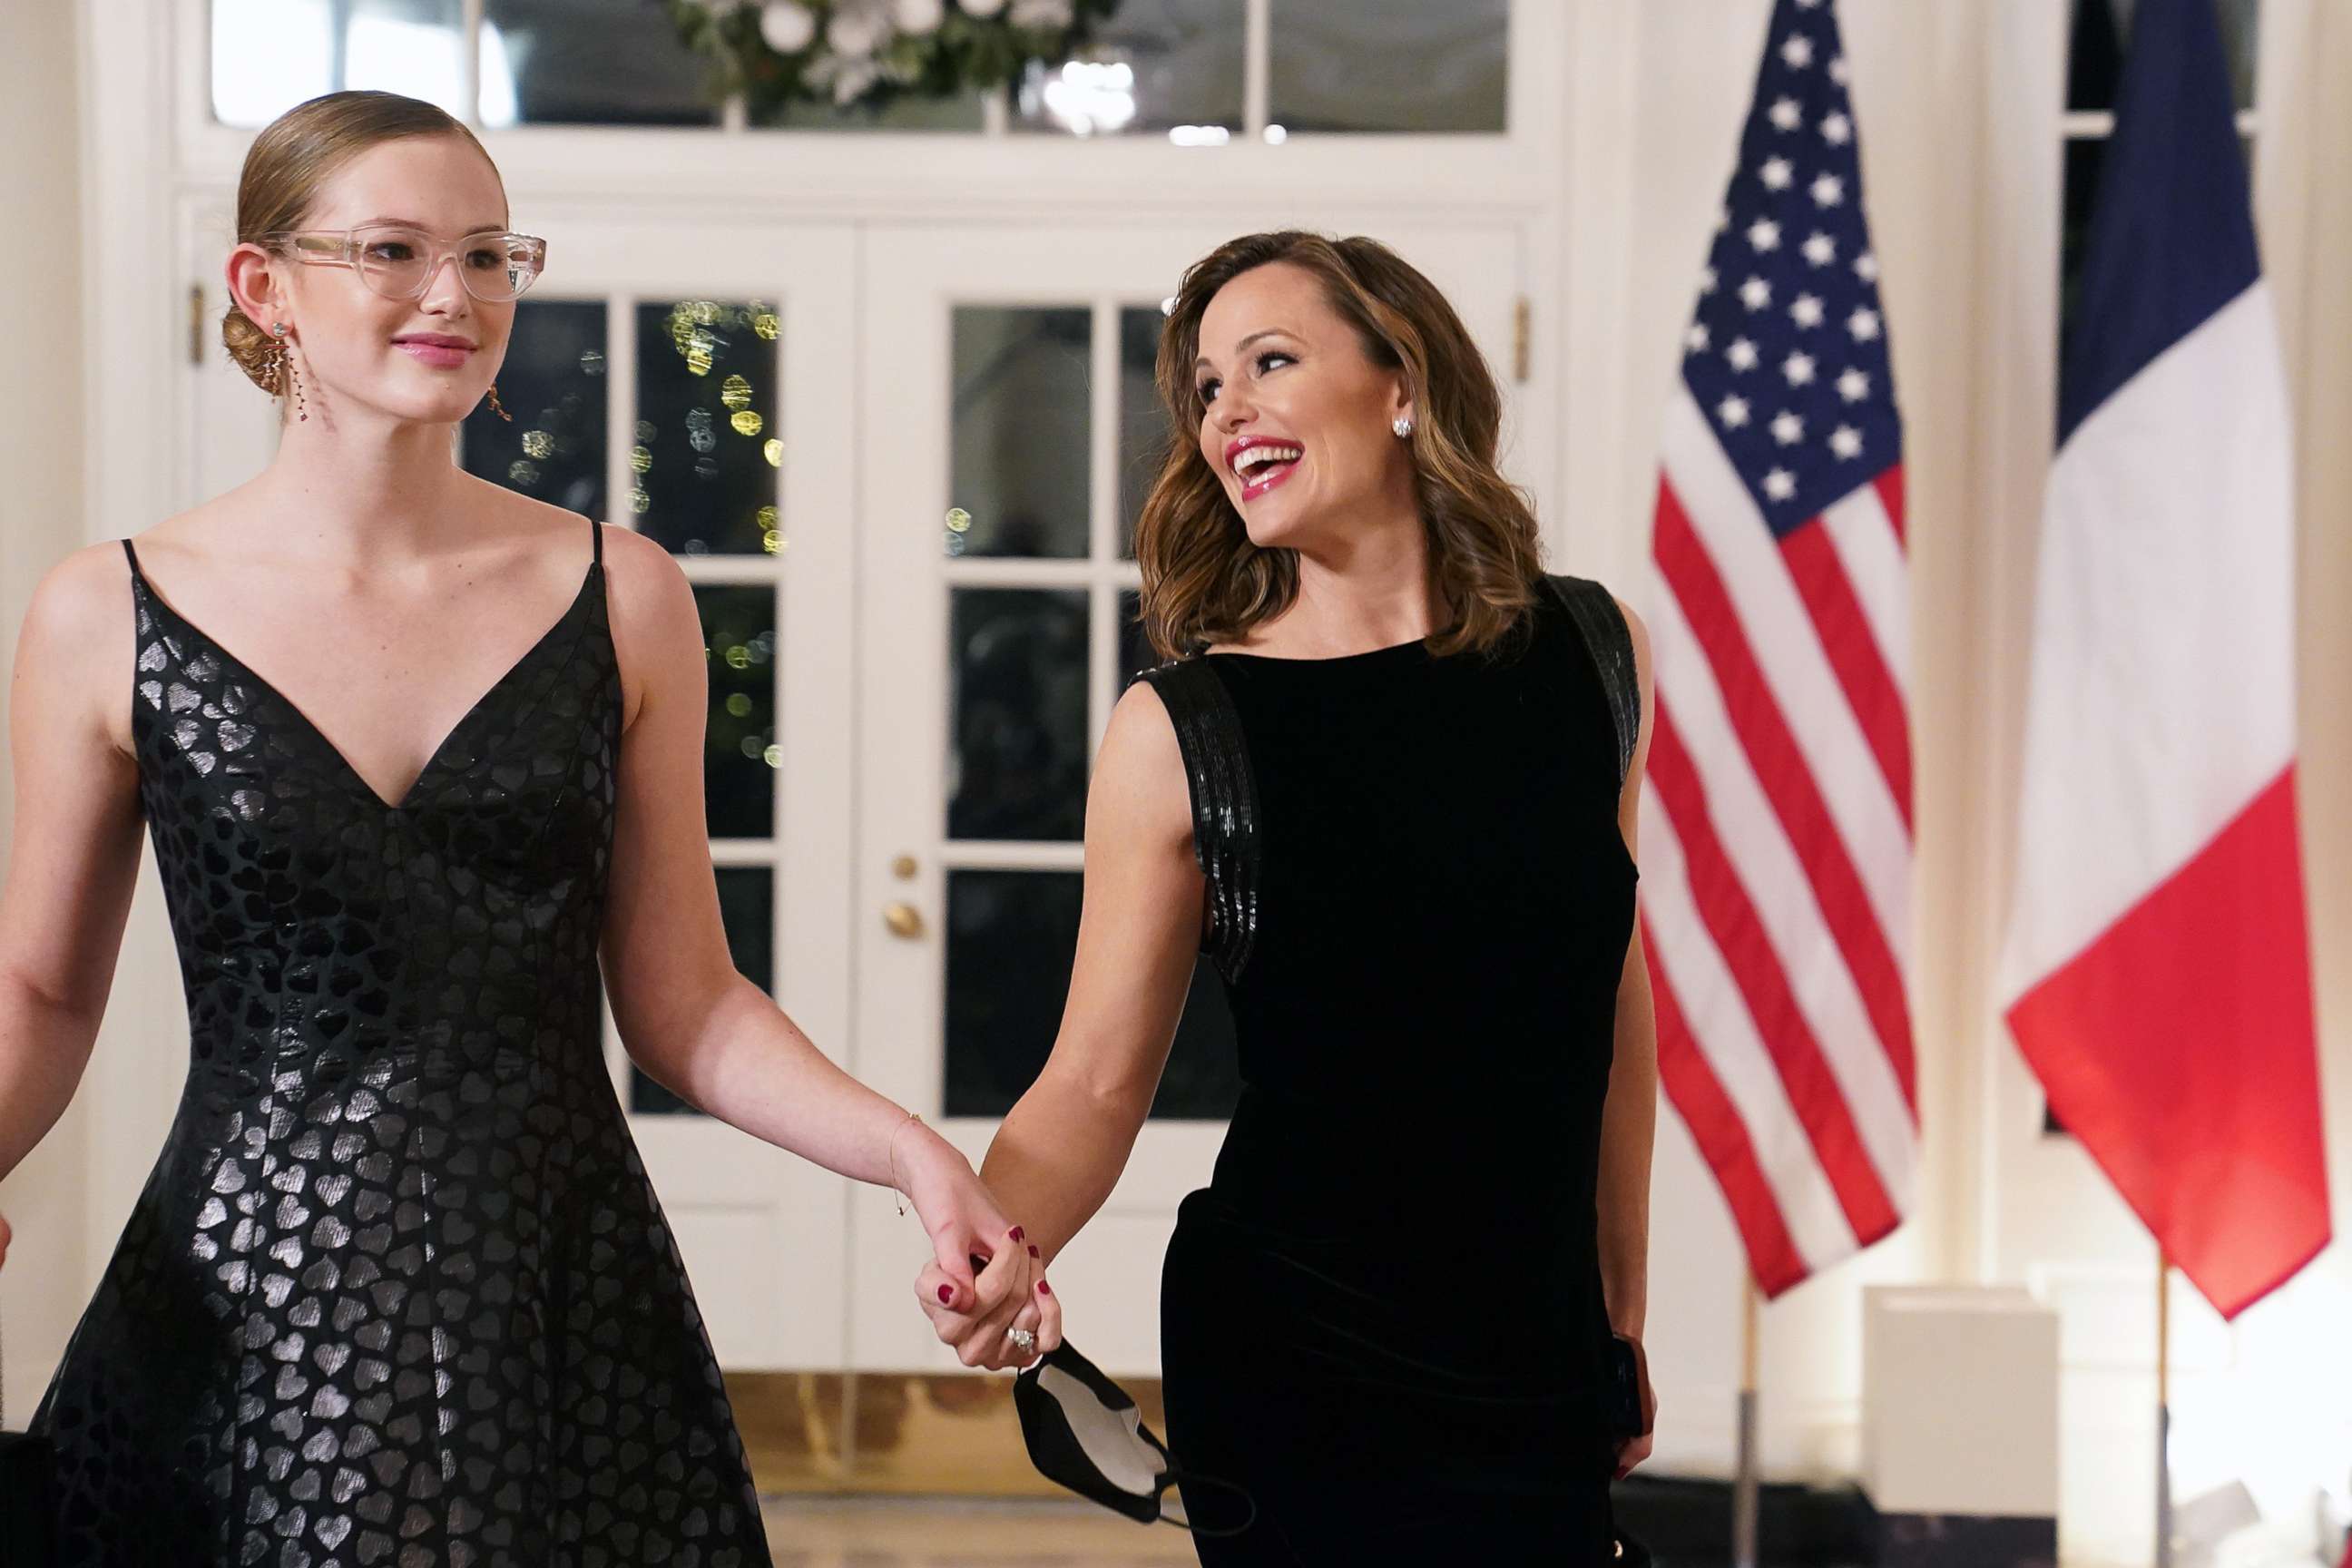 Jennifer Garner's daughter Violet Affleck shines at the White House